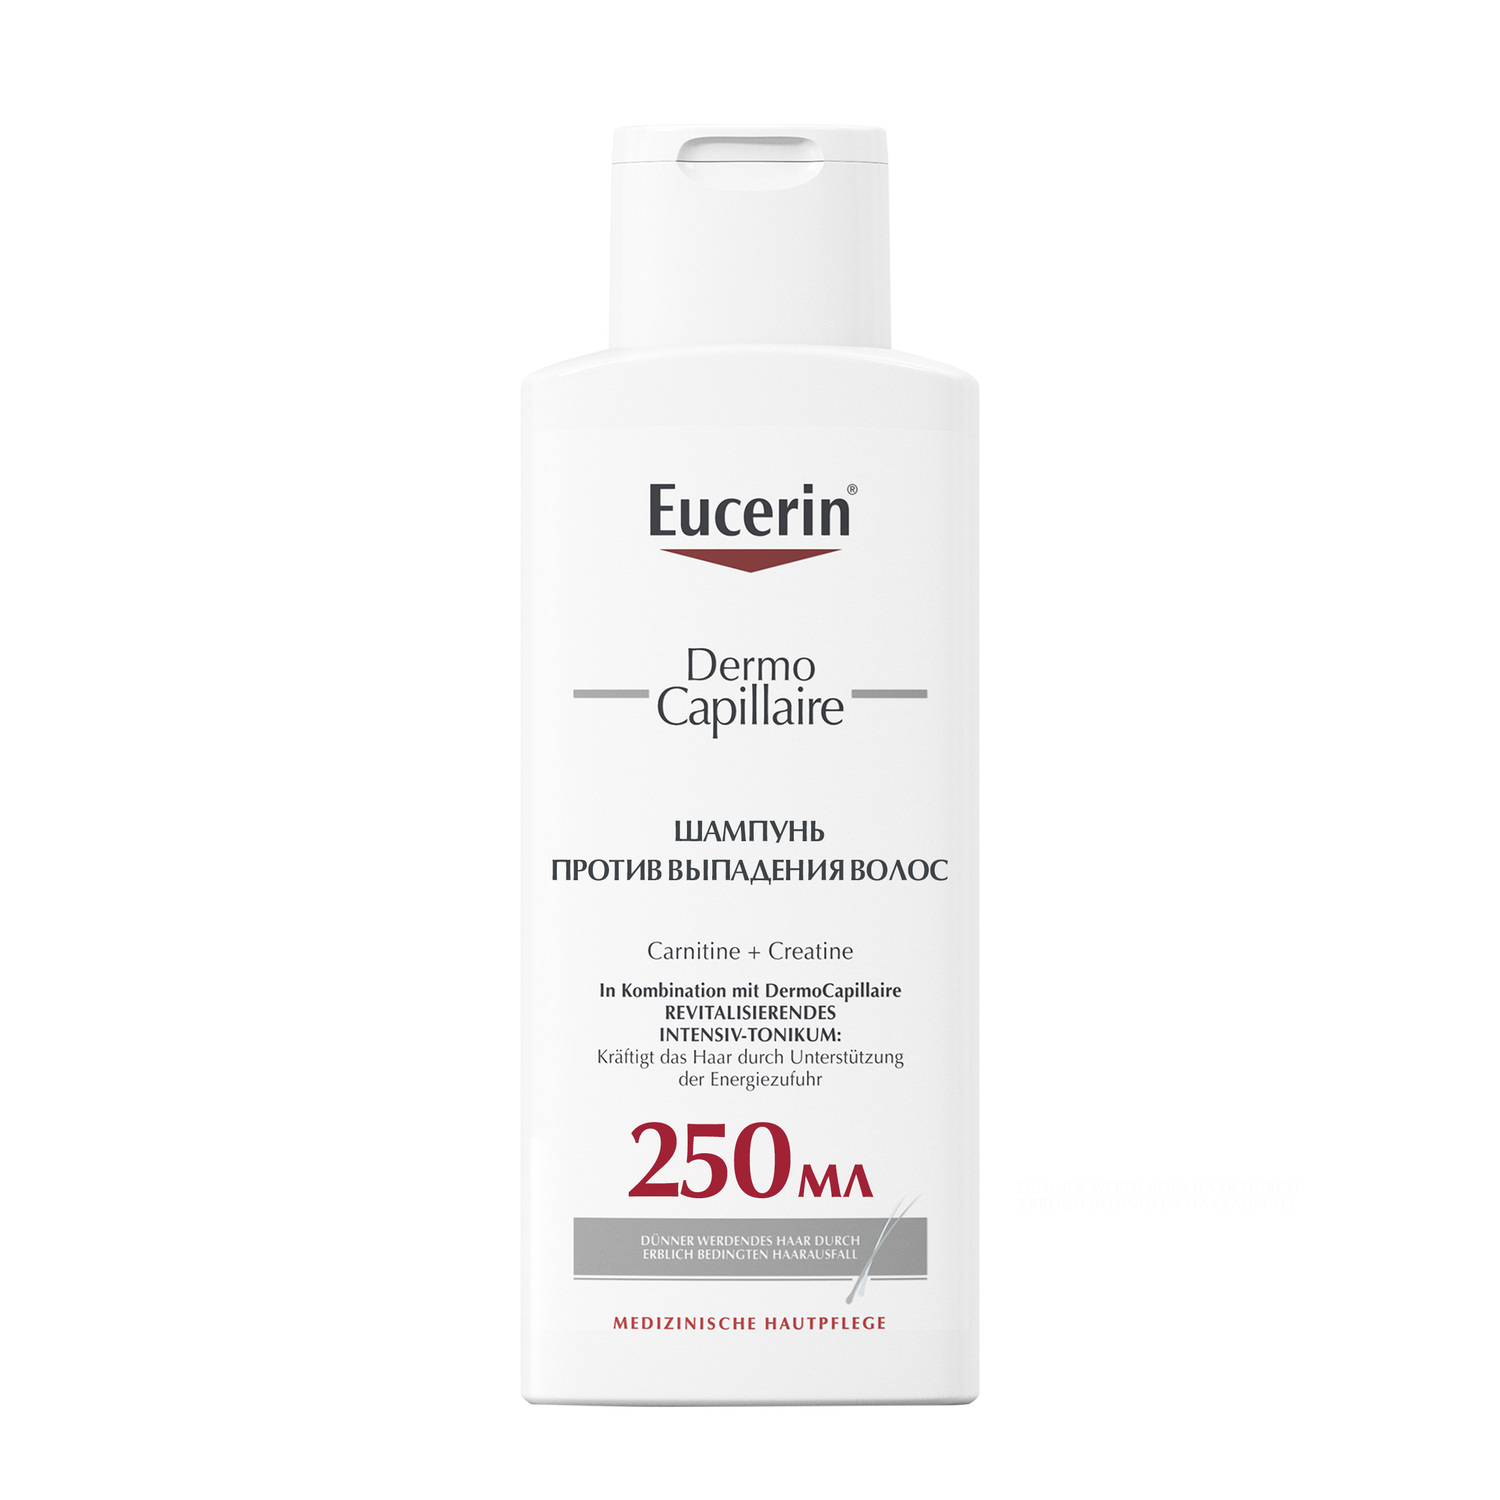 Eucerin Шампунь против выпадения волос, 250 мл (Eucerin, Der